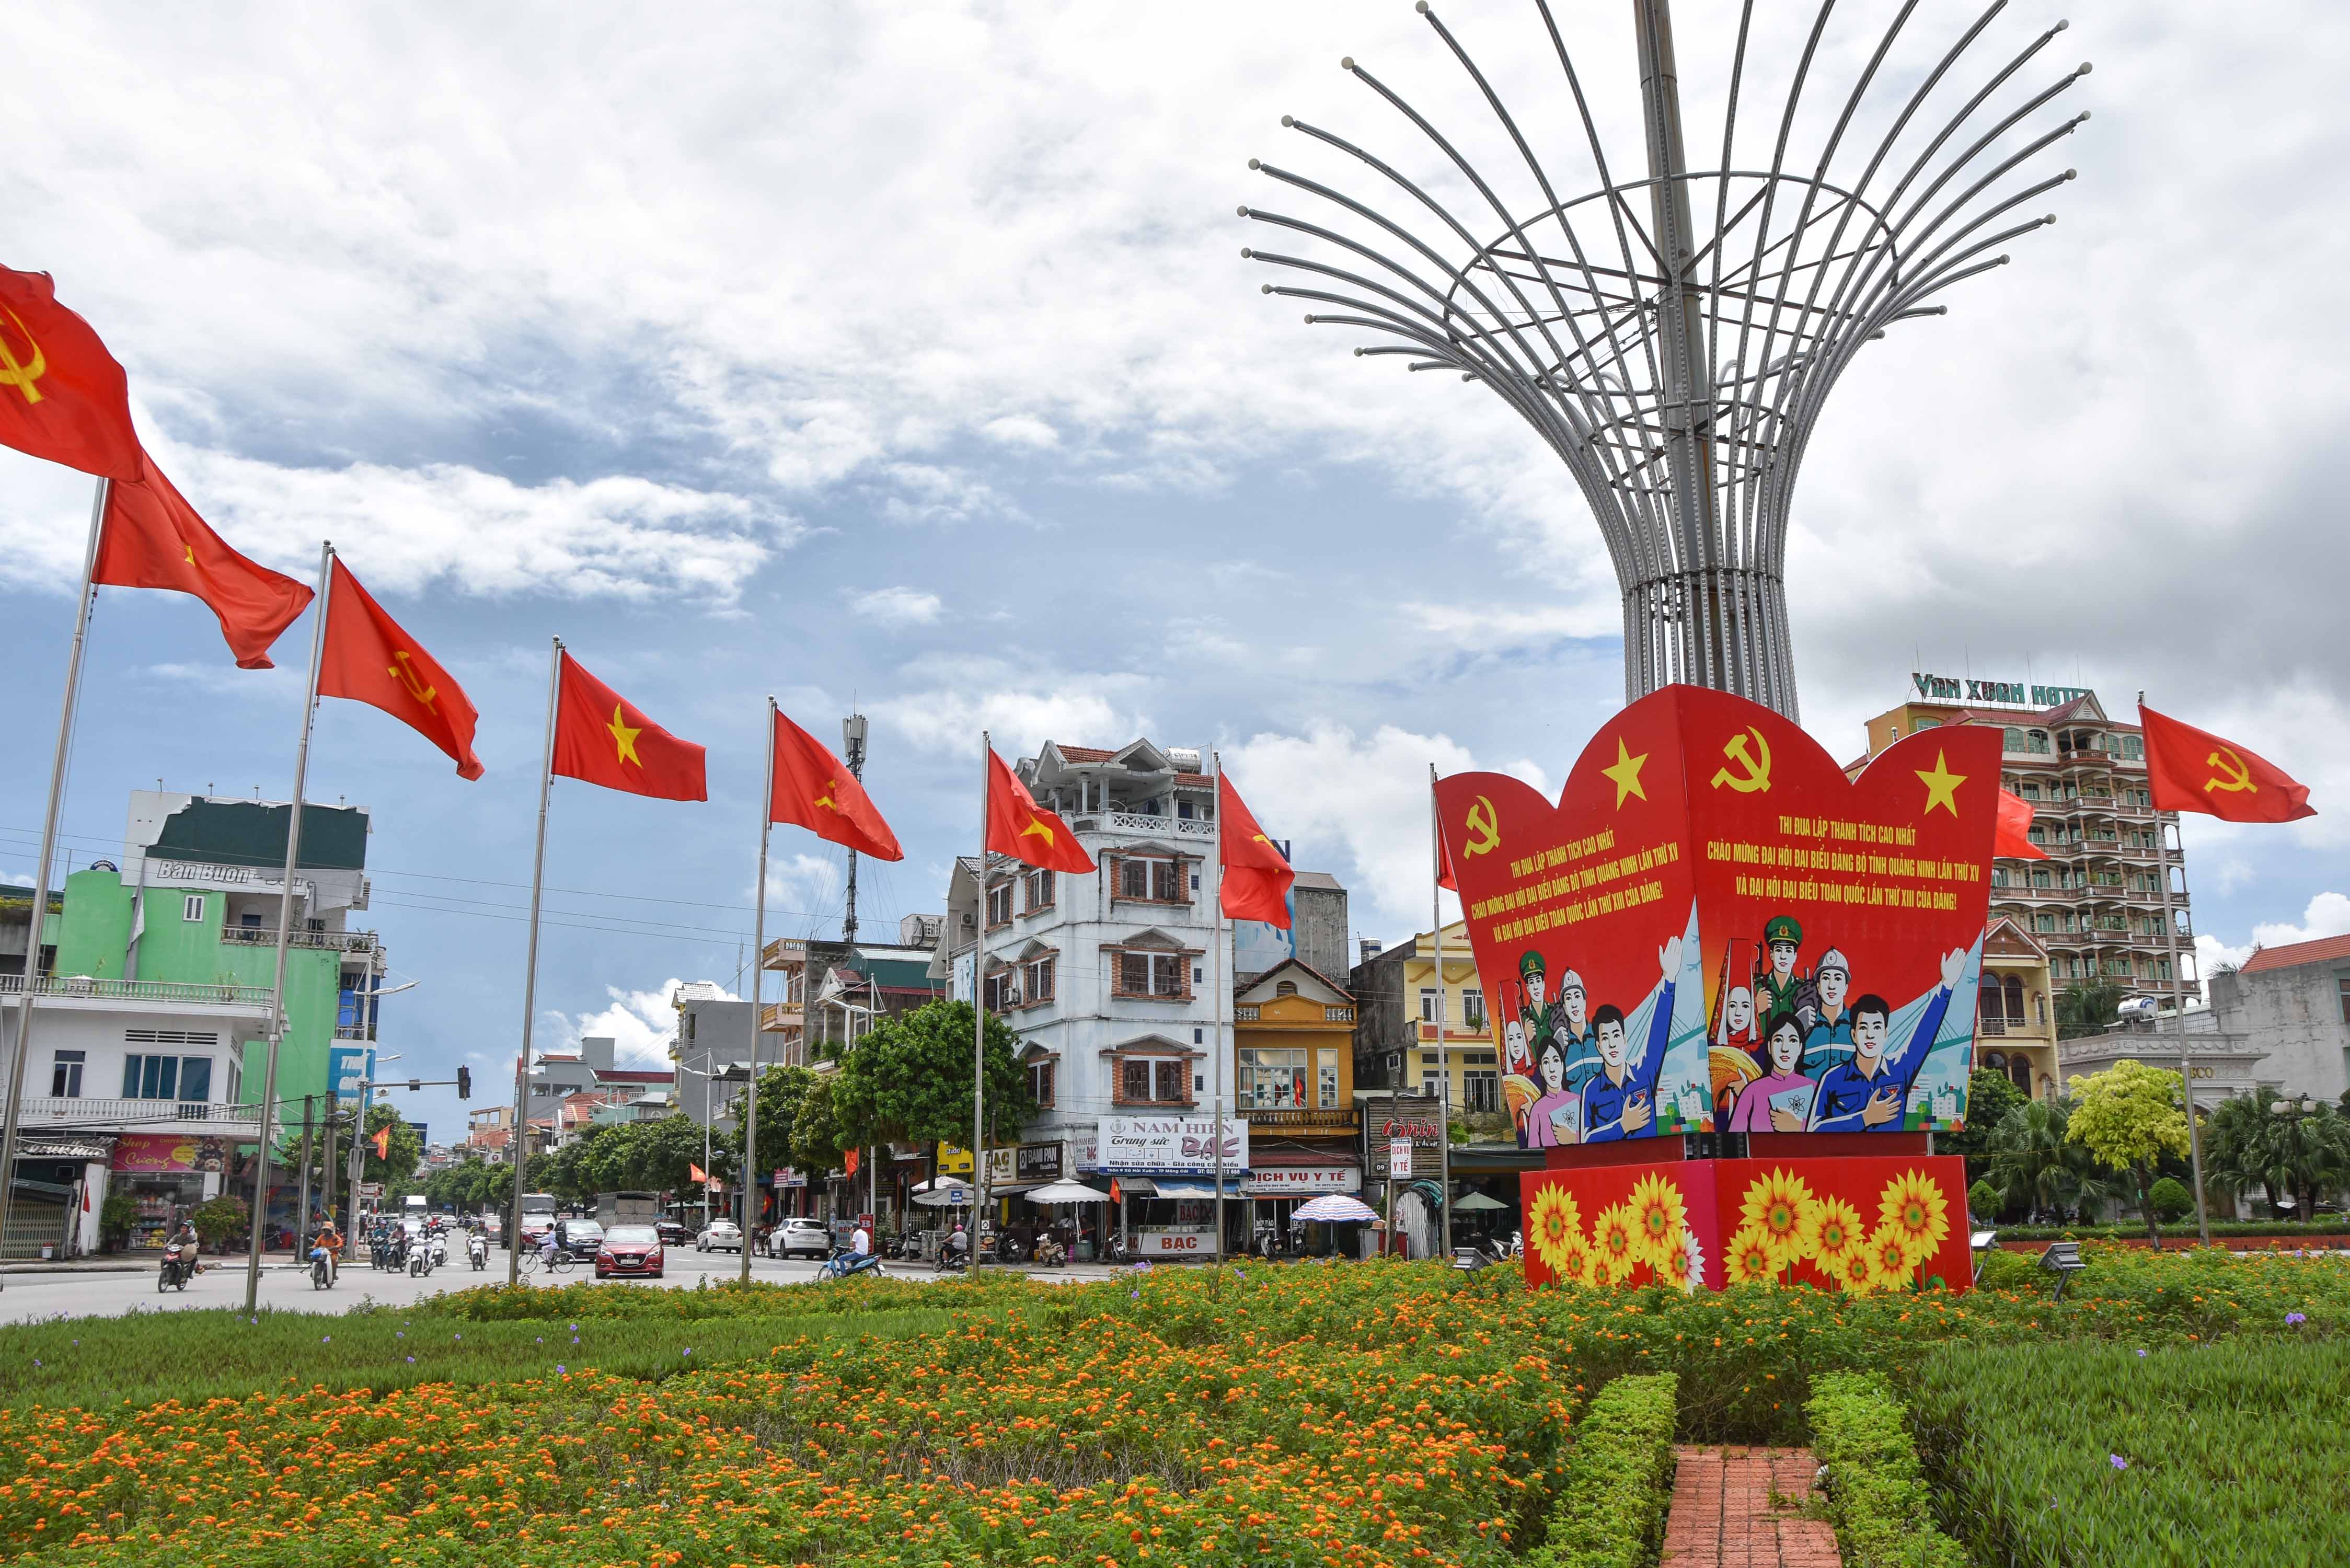 Đường phố TP Móng Cái được trang trí khánh tiết để chào mừng đại hội đảng các cấp và Tết Nguyên đán Tân Sửu 2021.